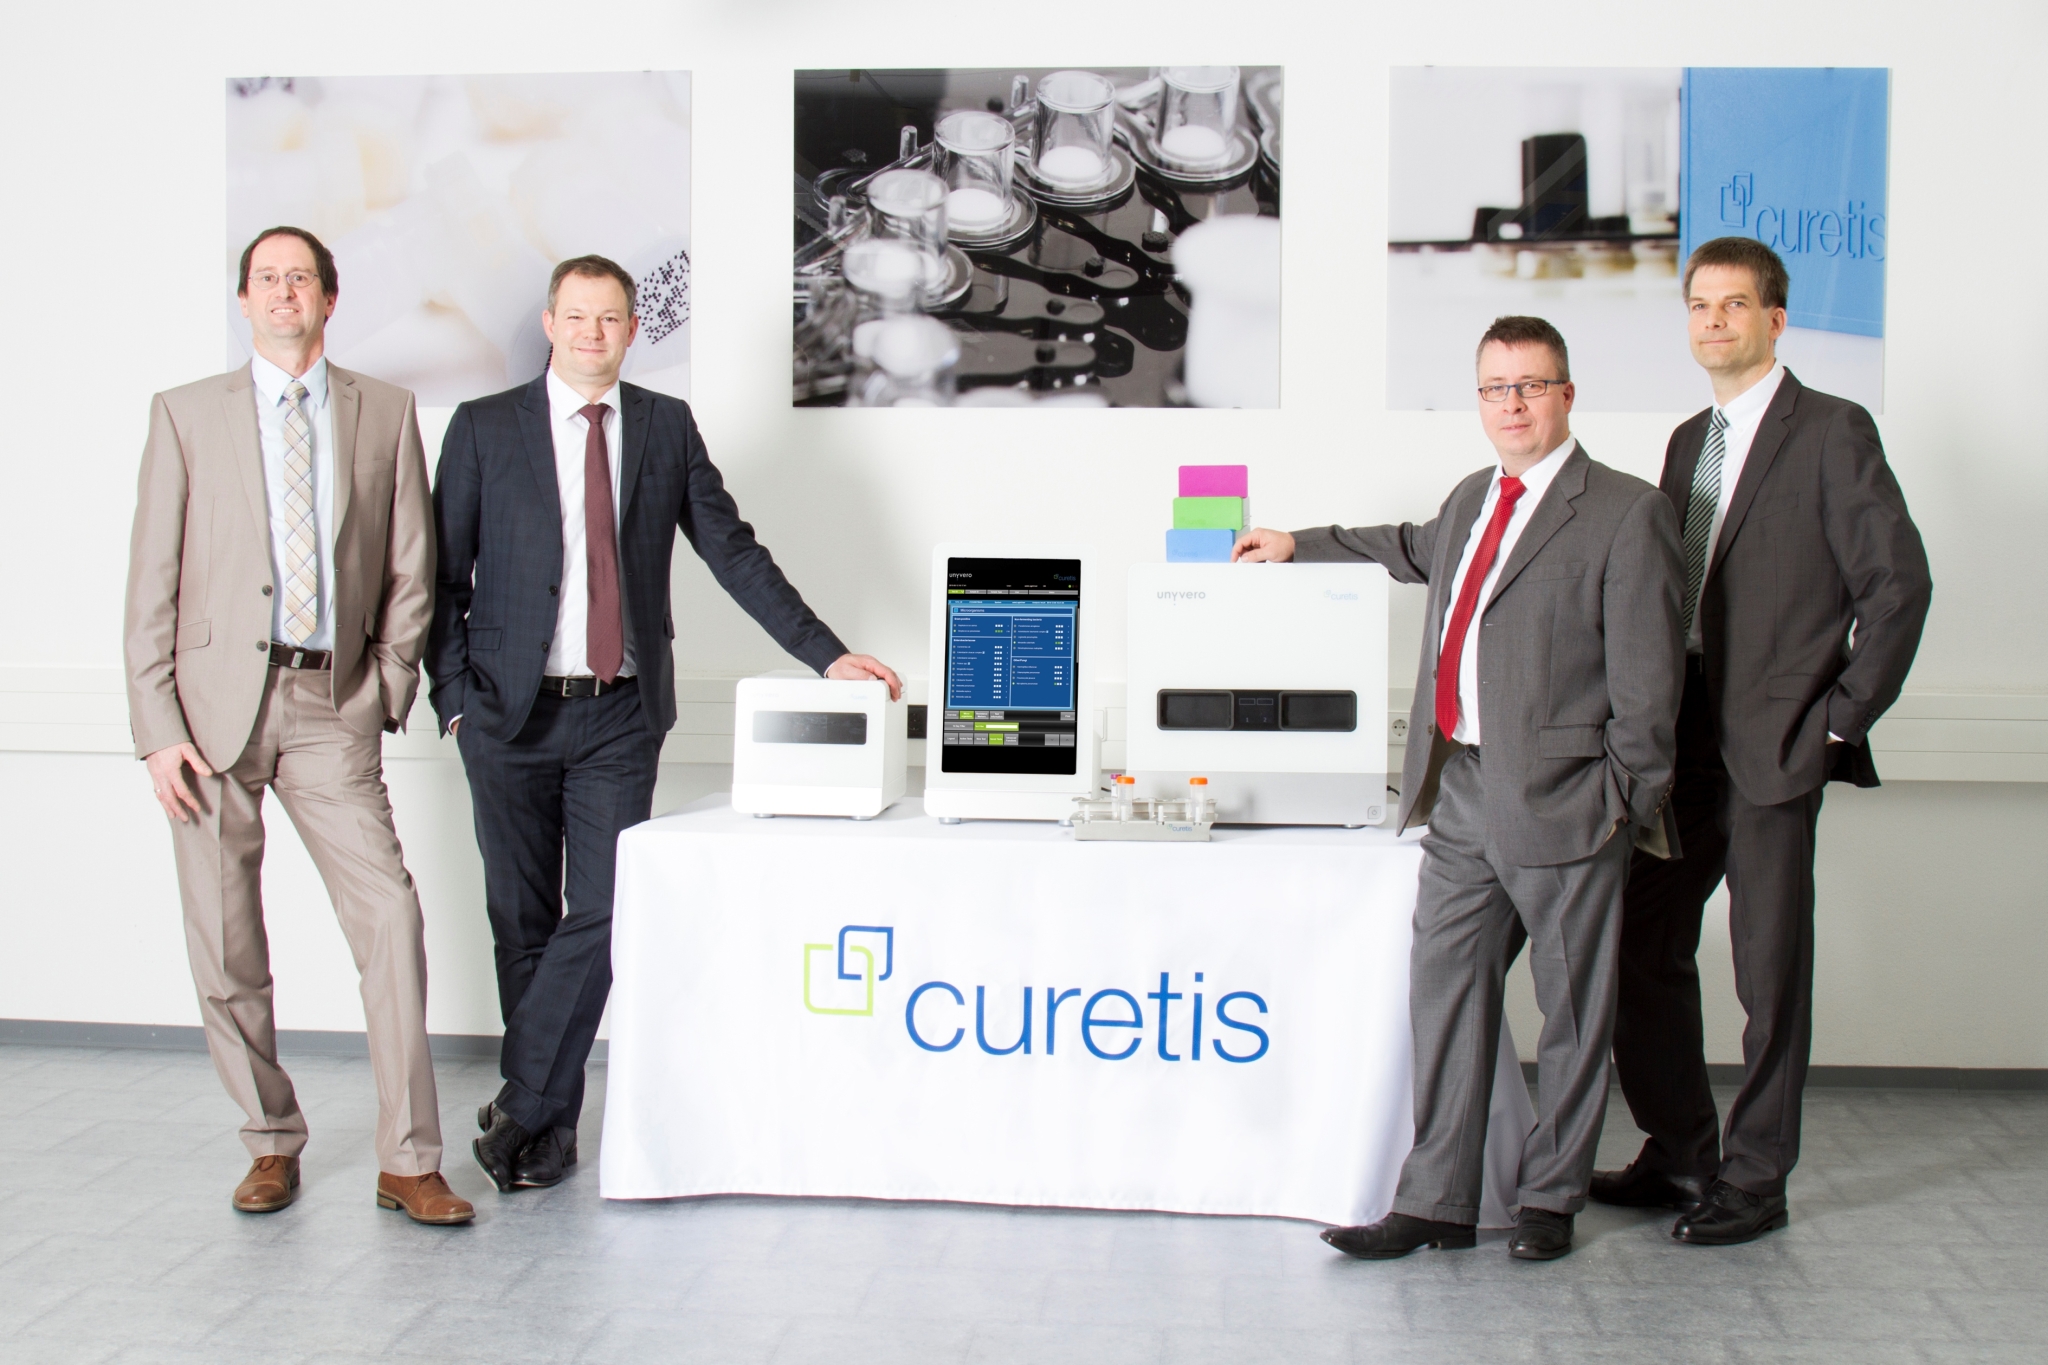 Der Vortsand der Curetis GmbH bestehend aus 4 Männern.